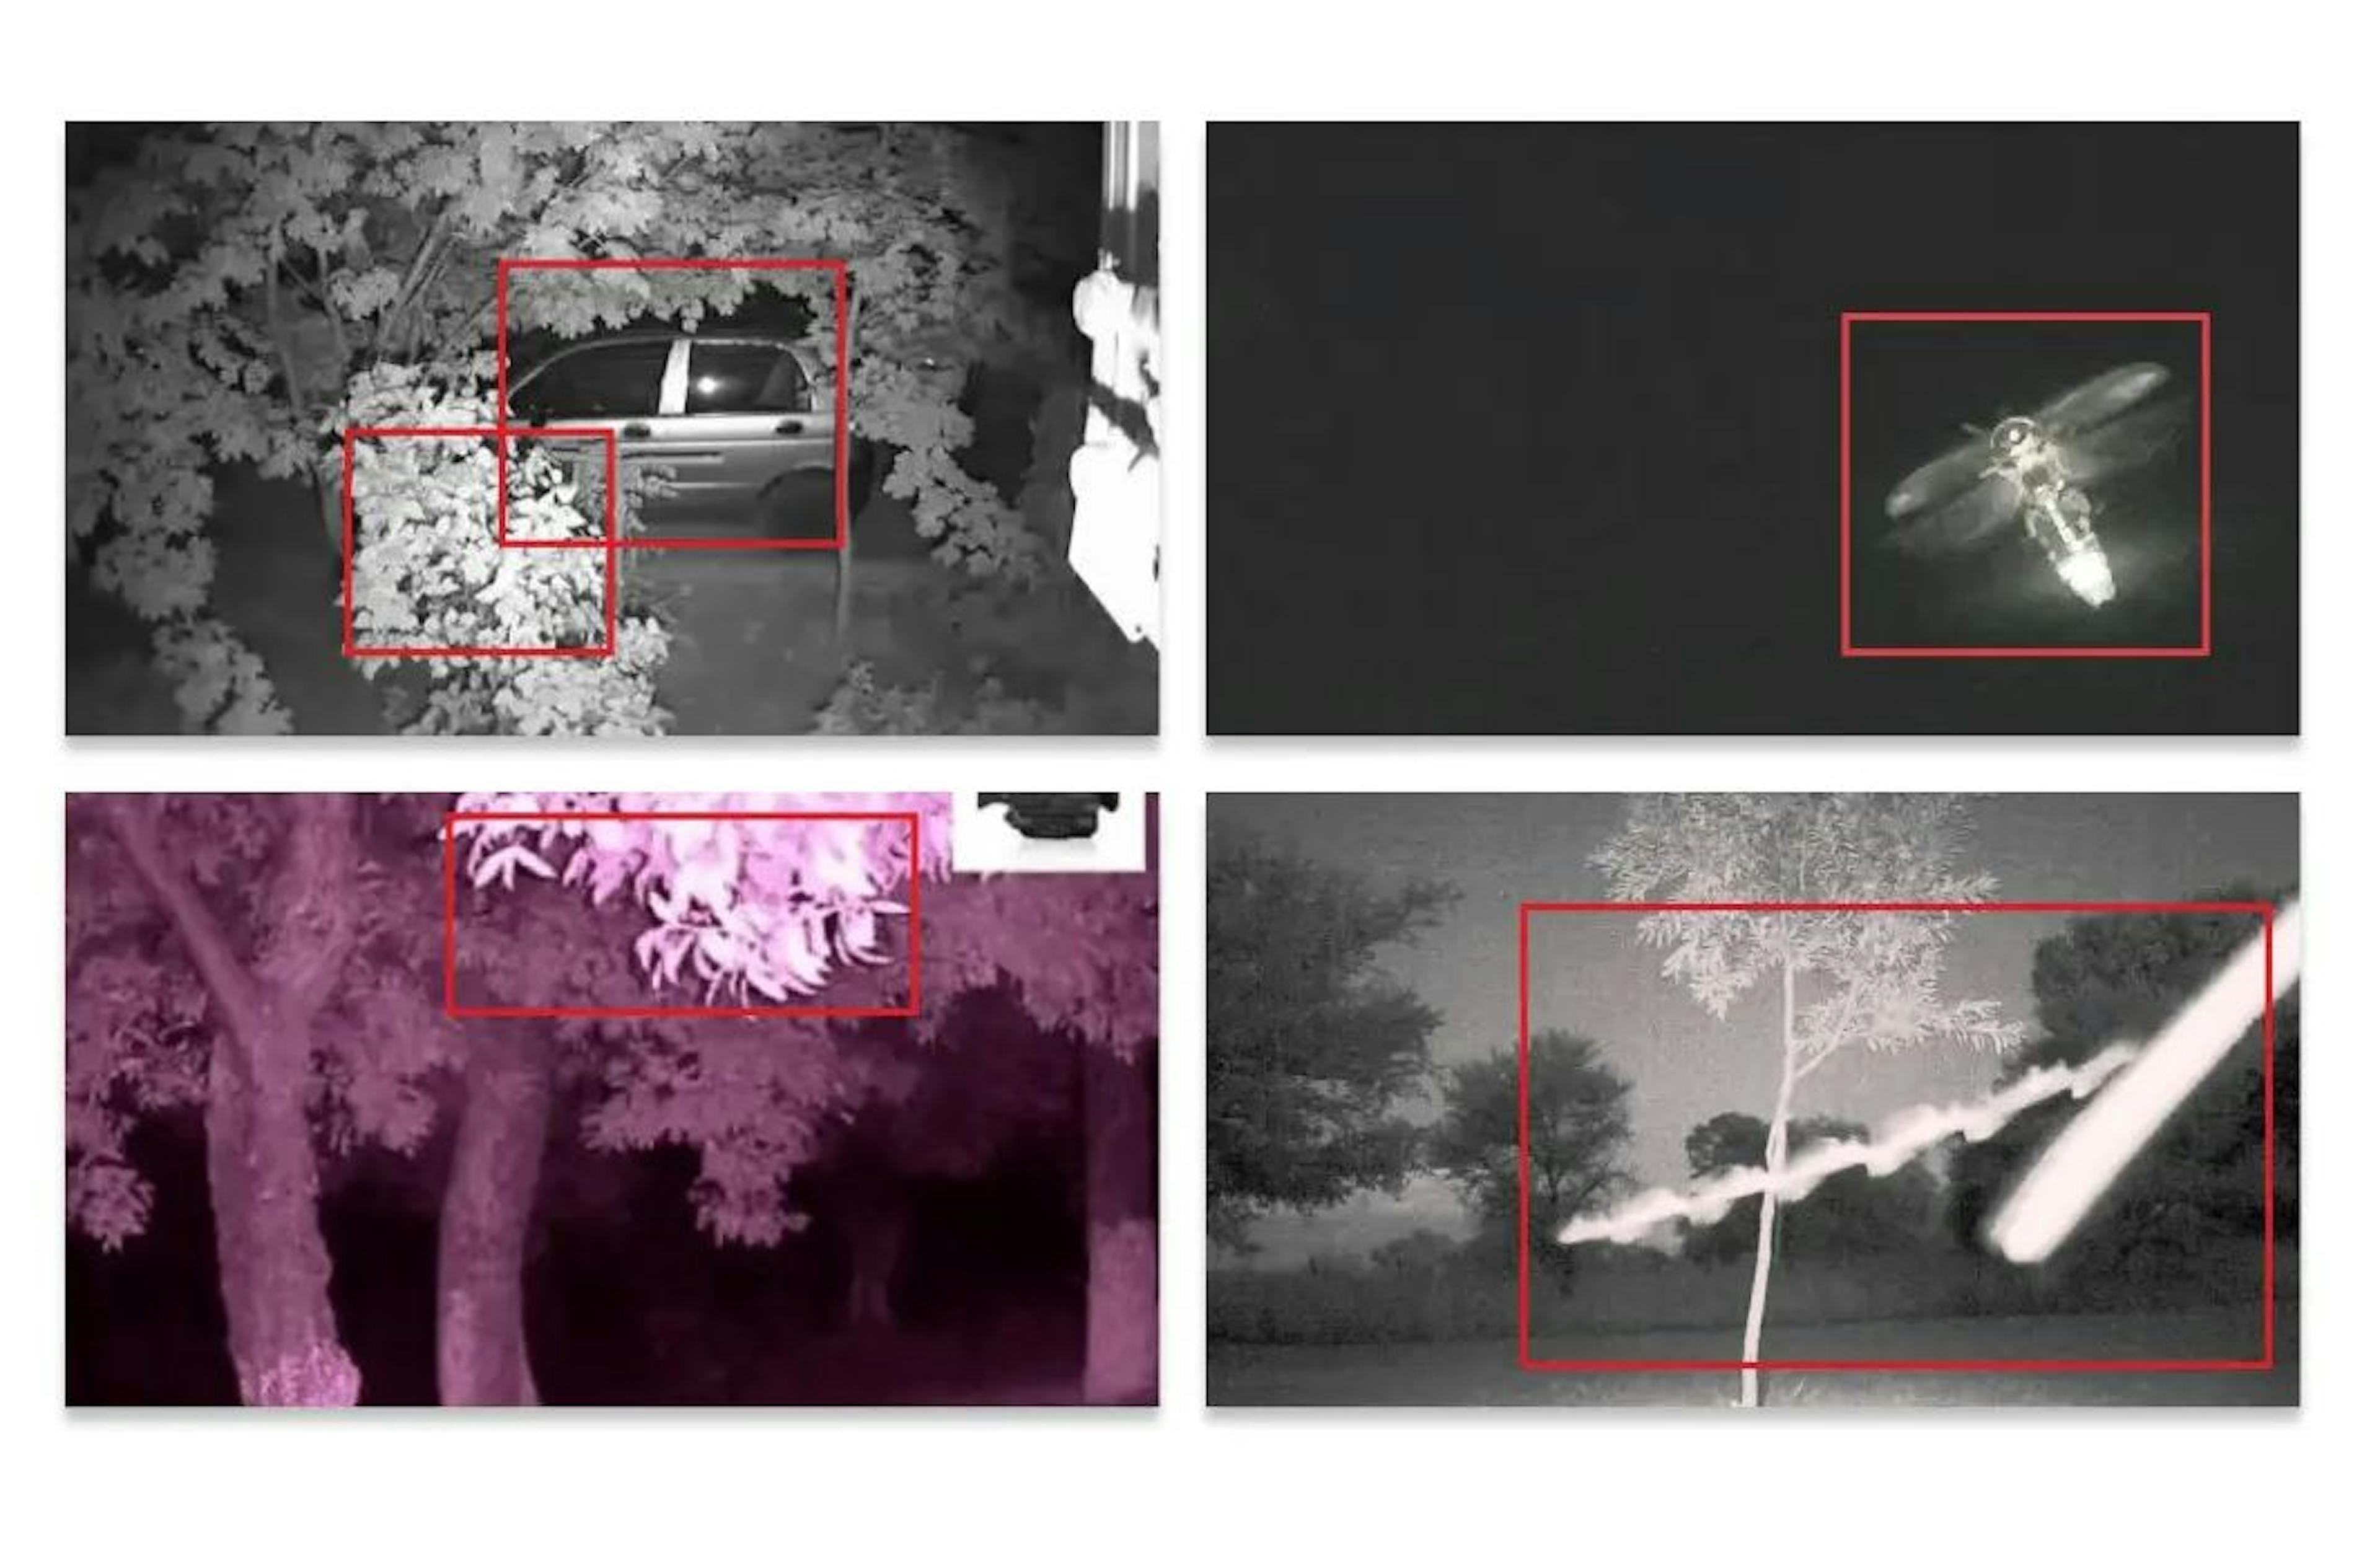 Durante la noche, el modelo detectaría ramas de árboles o insectos como pájaros.